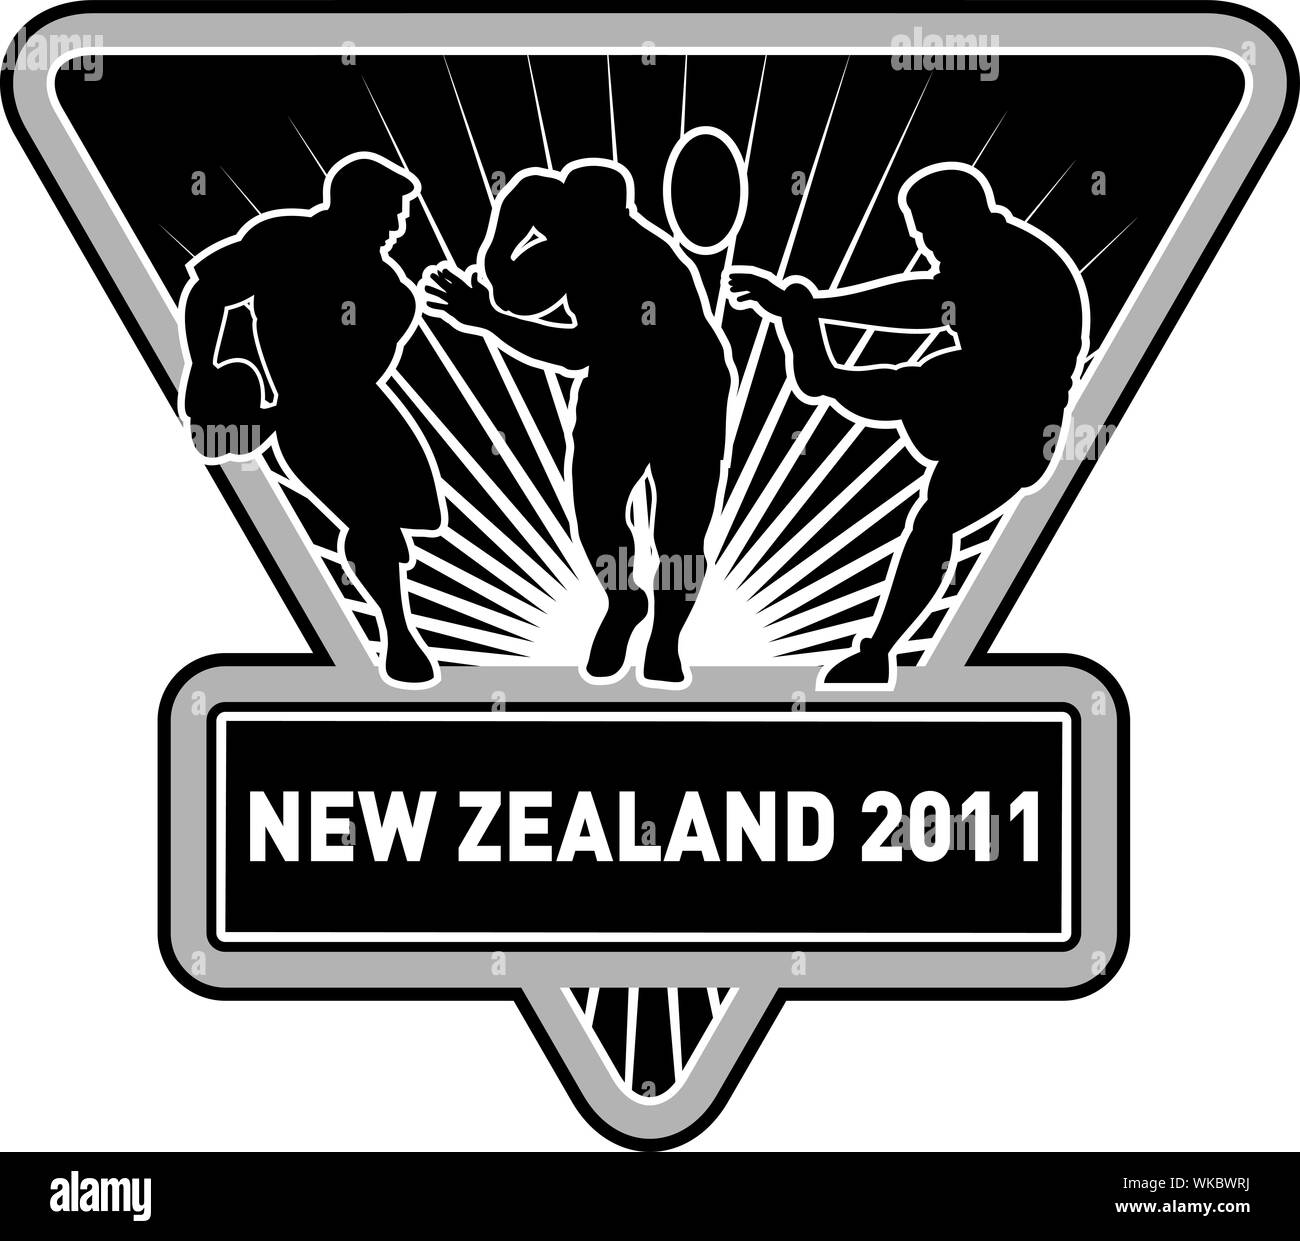 Illustration de silhouette de rugby player tournant passant parant et Kicking the ball set à l'intérieur d'un bouclier avec les mots 'rnew Nouvelle-zélande 2011' Banque D'Images